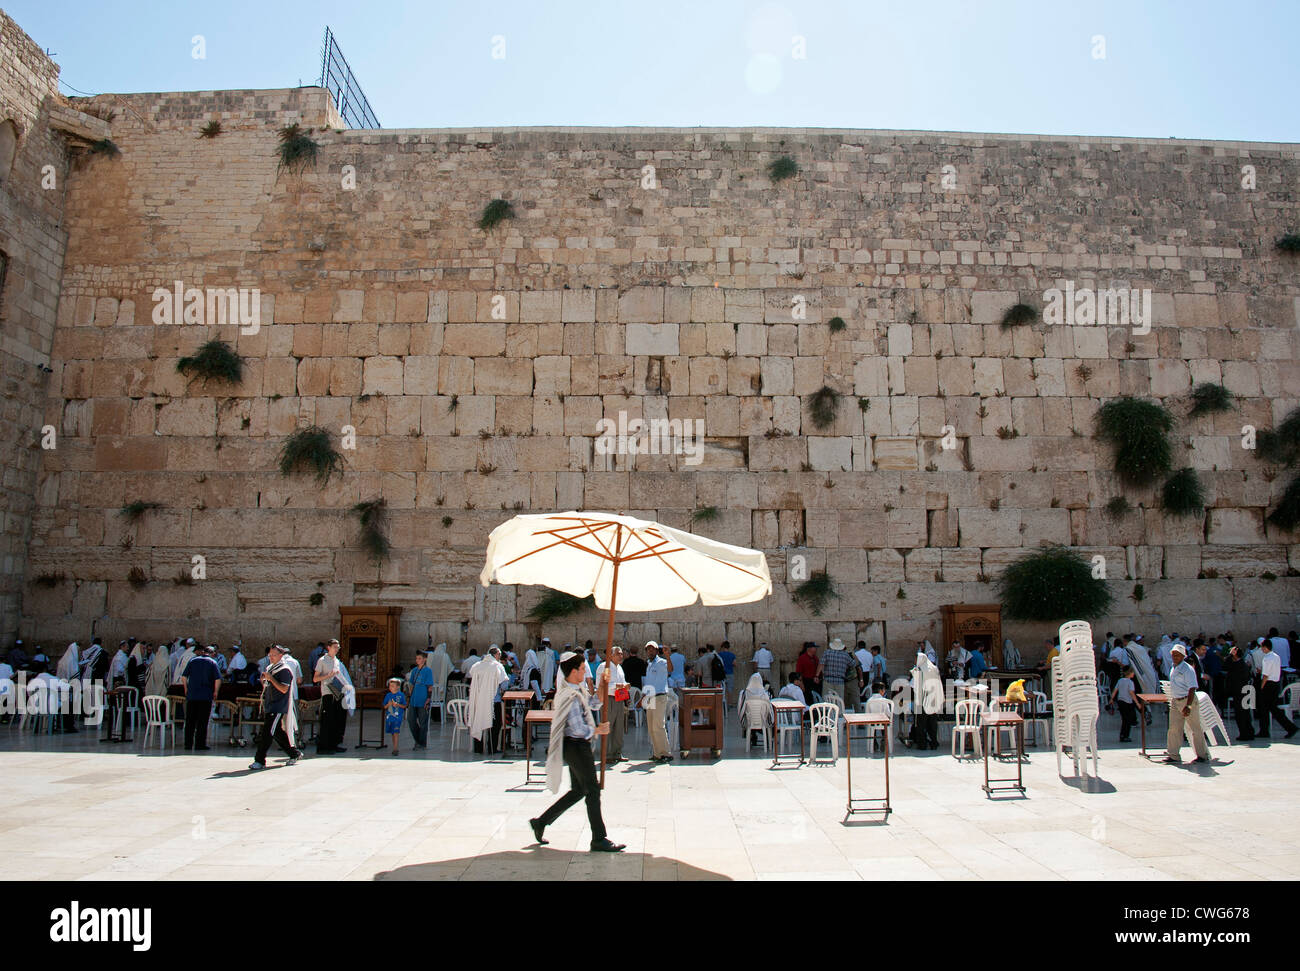 Le persone si radunano per tutto il giorno a pregare presso il Muro Occidentale (noto anche come il Muro del Pianto), nel cuore di Gerusalemme, Israele Foto Stock